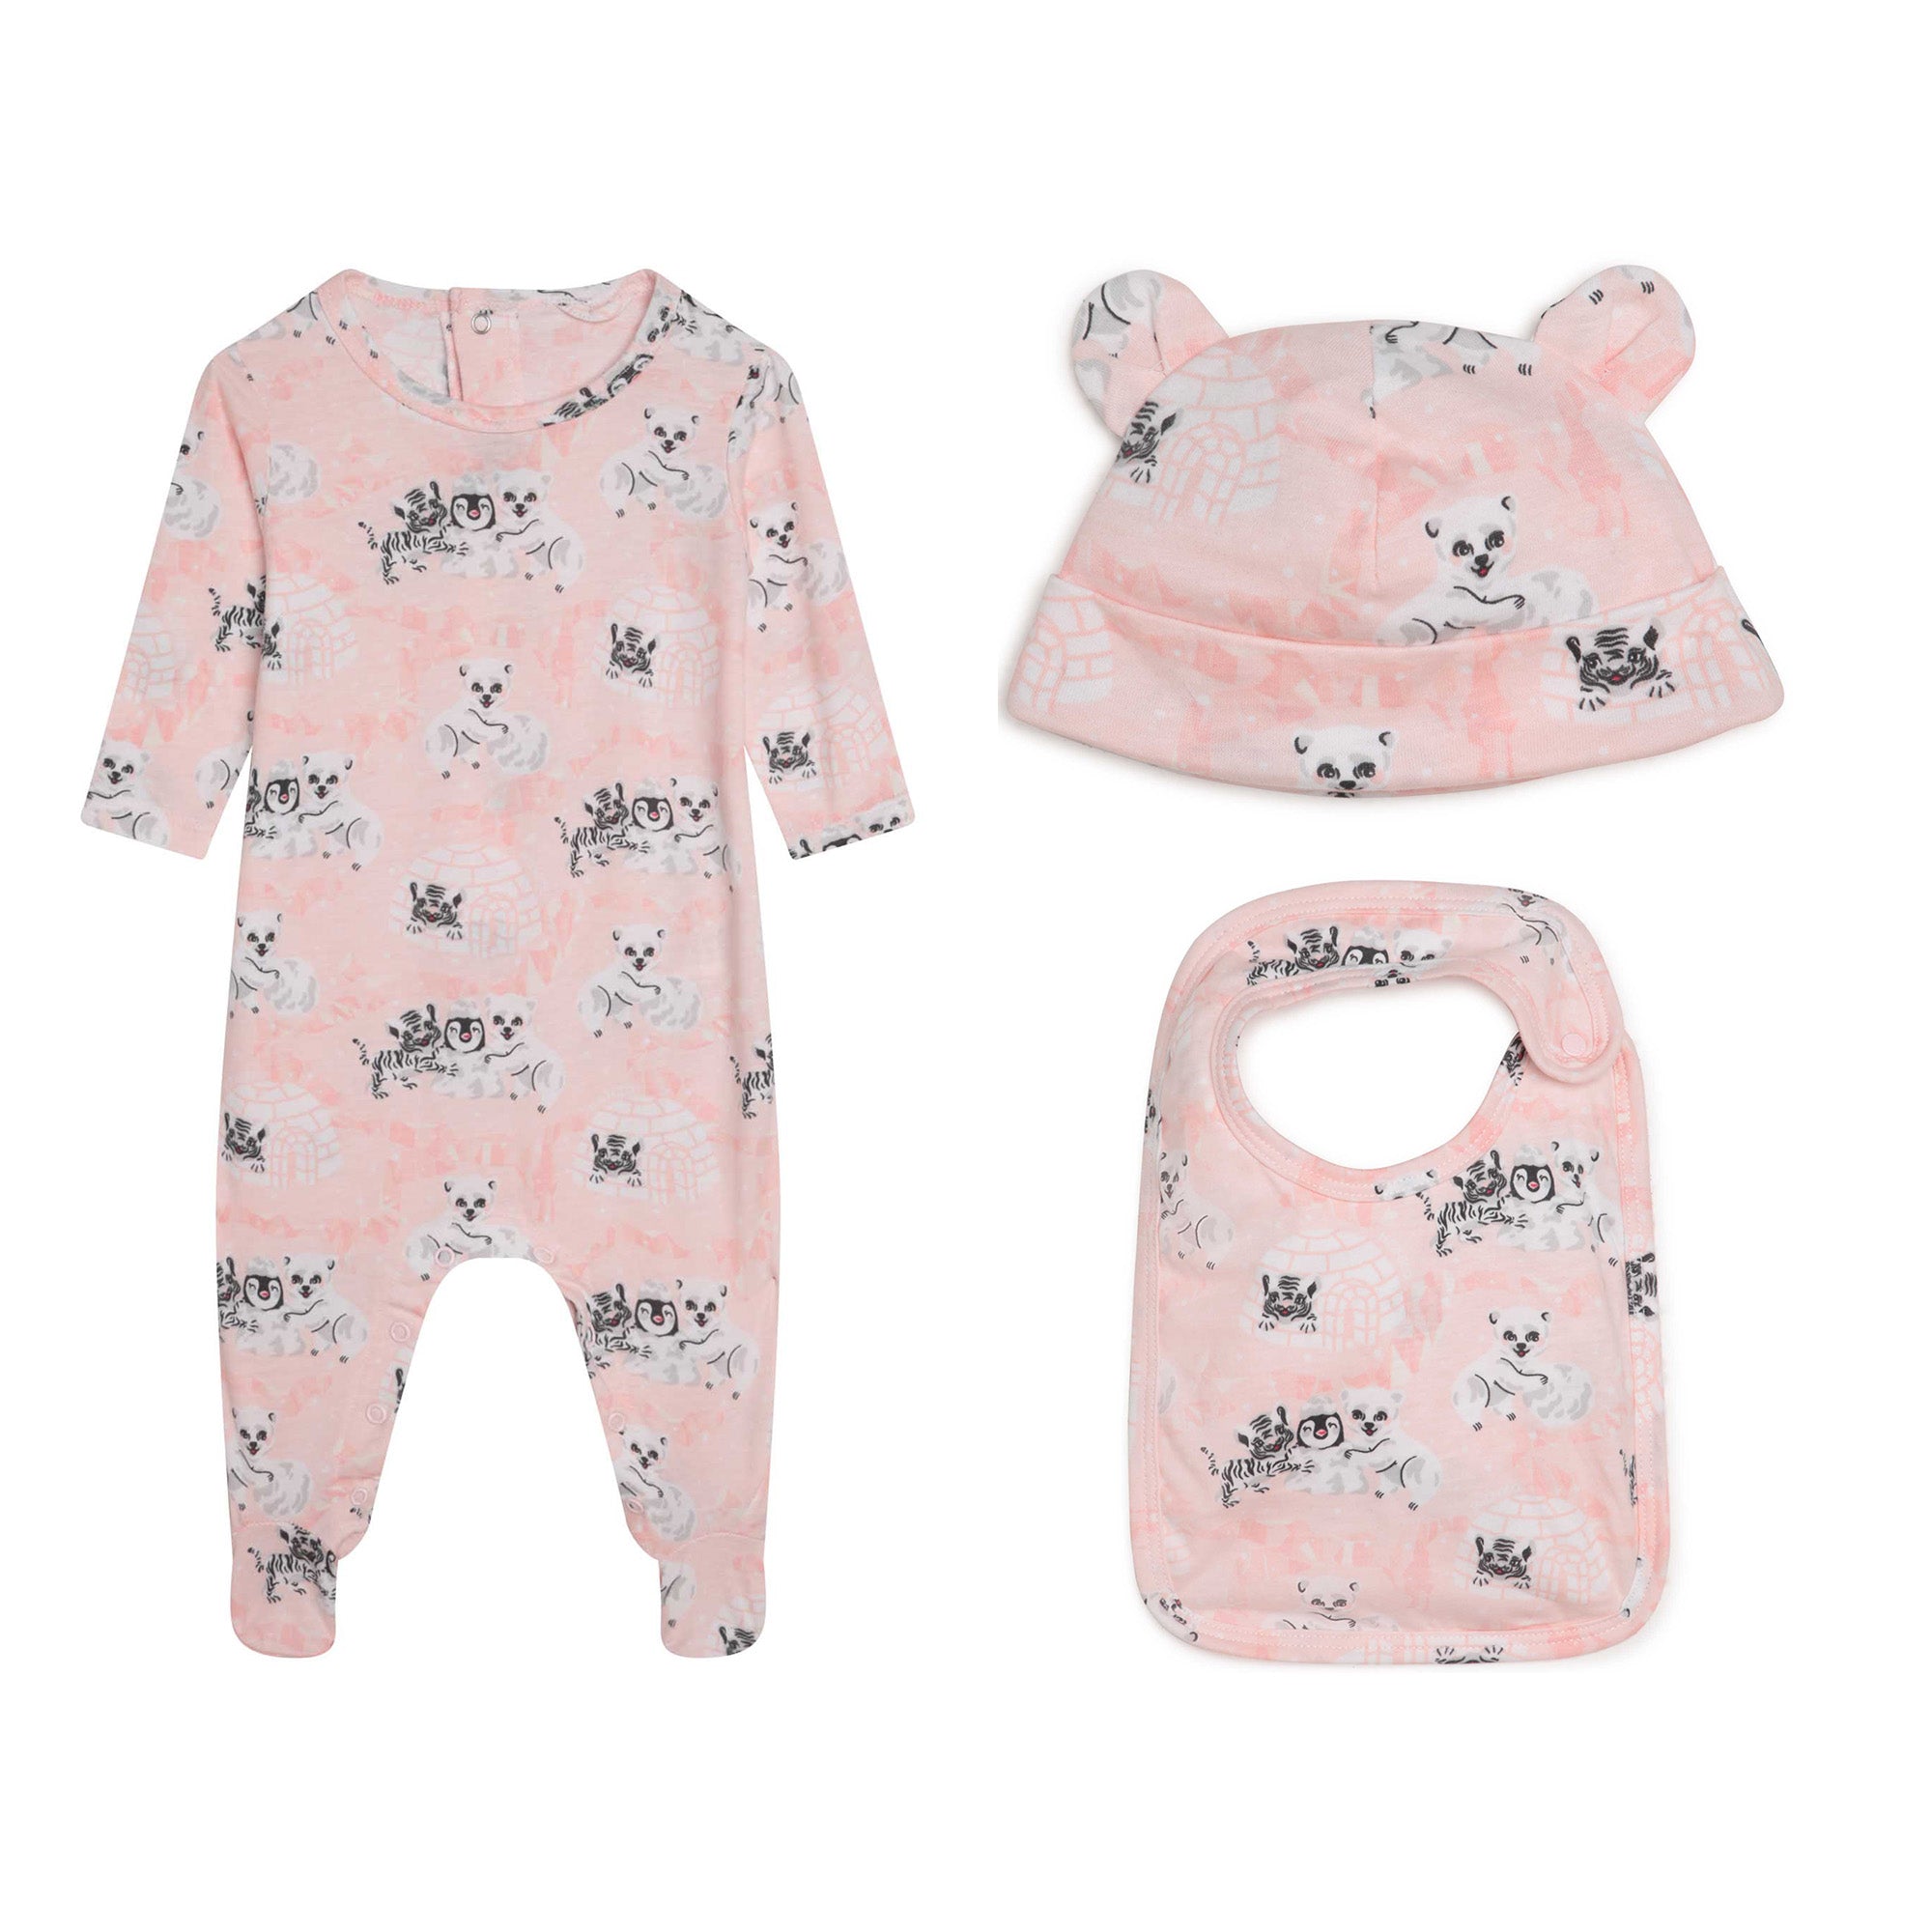 Baby Girls Pink Printed Cotton Babysuit Set